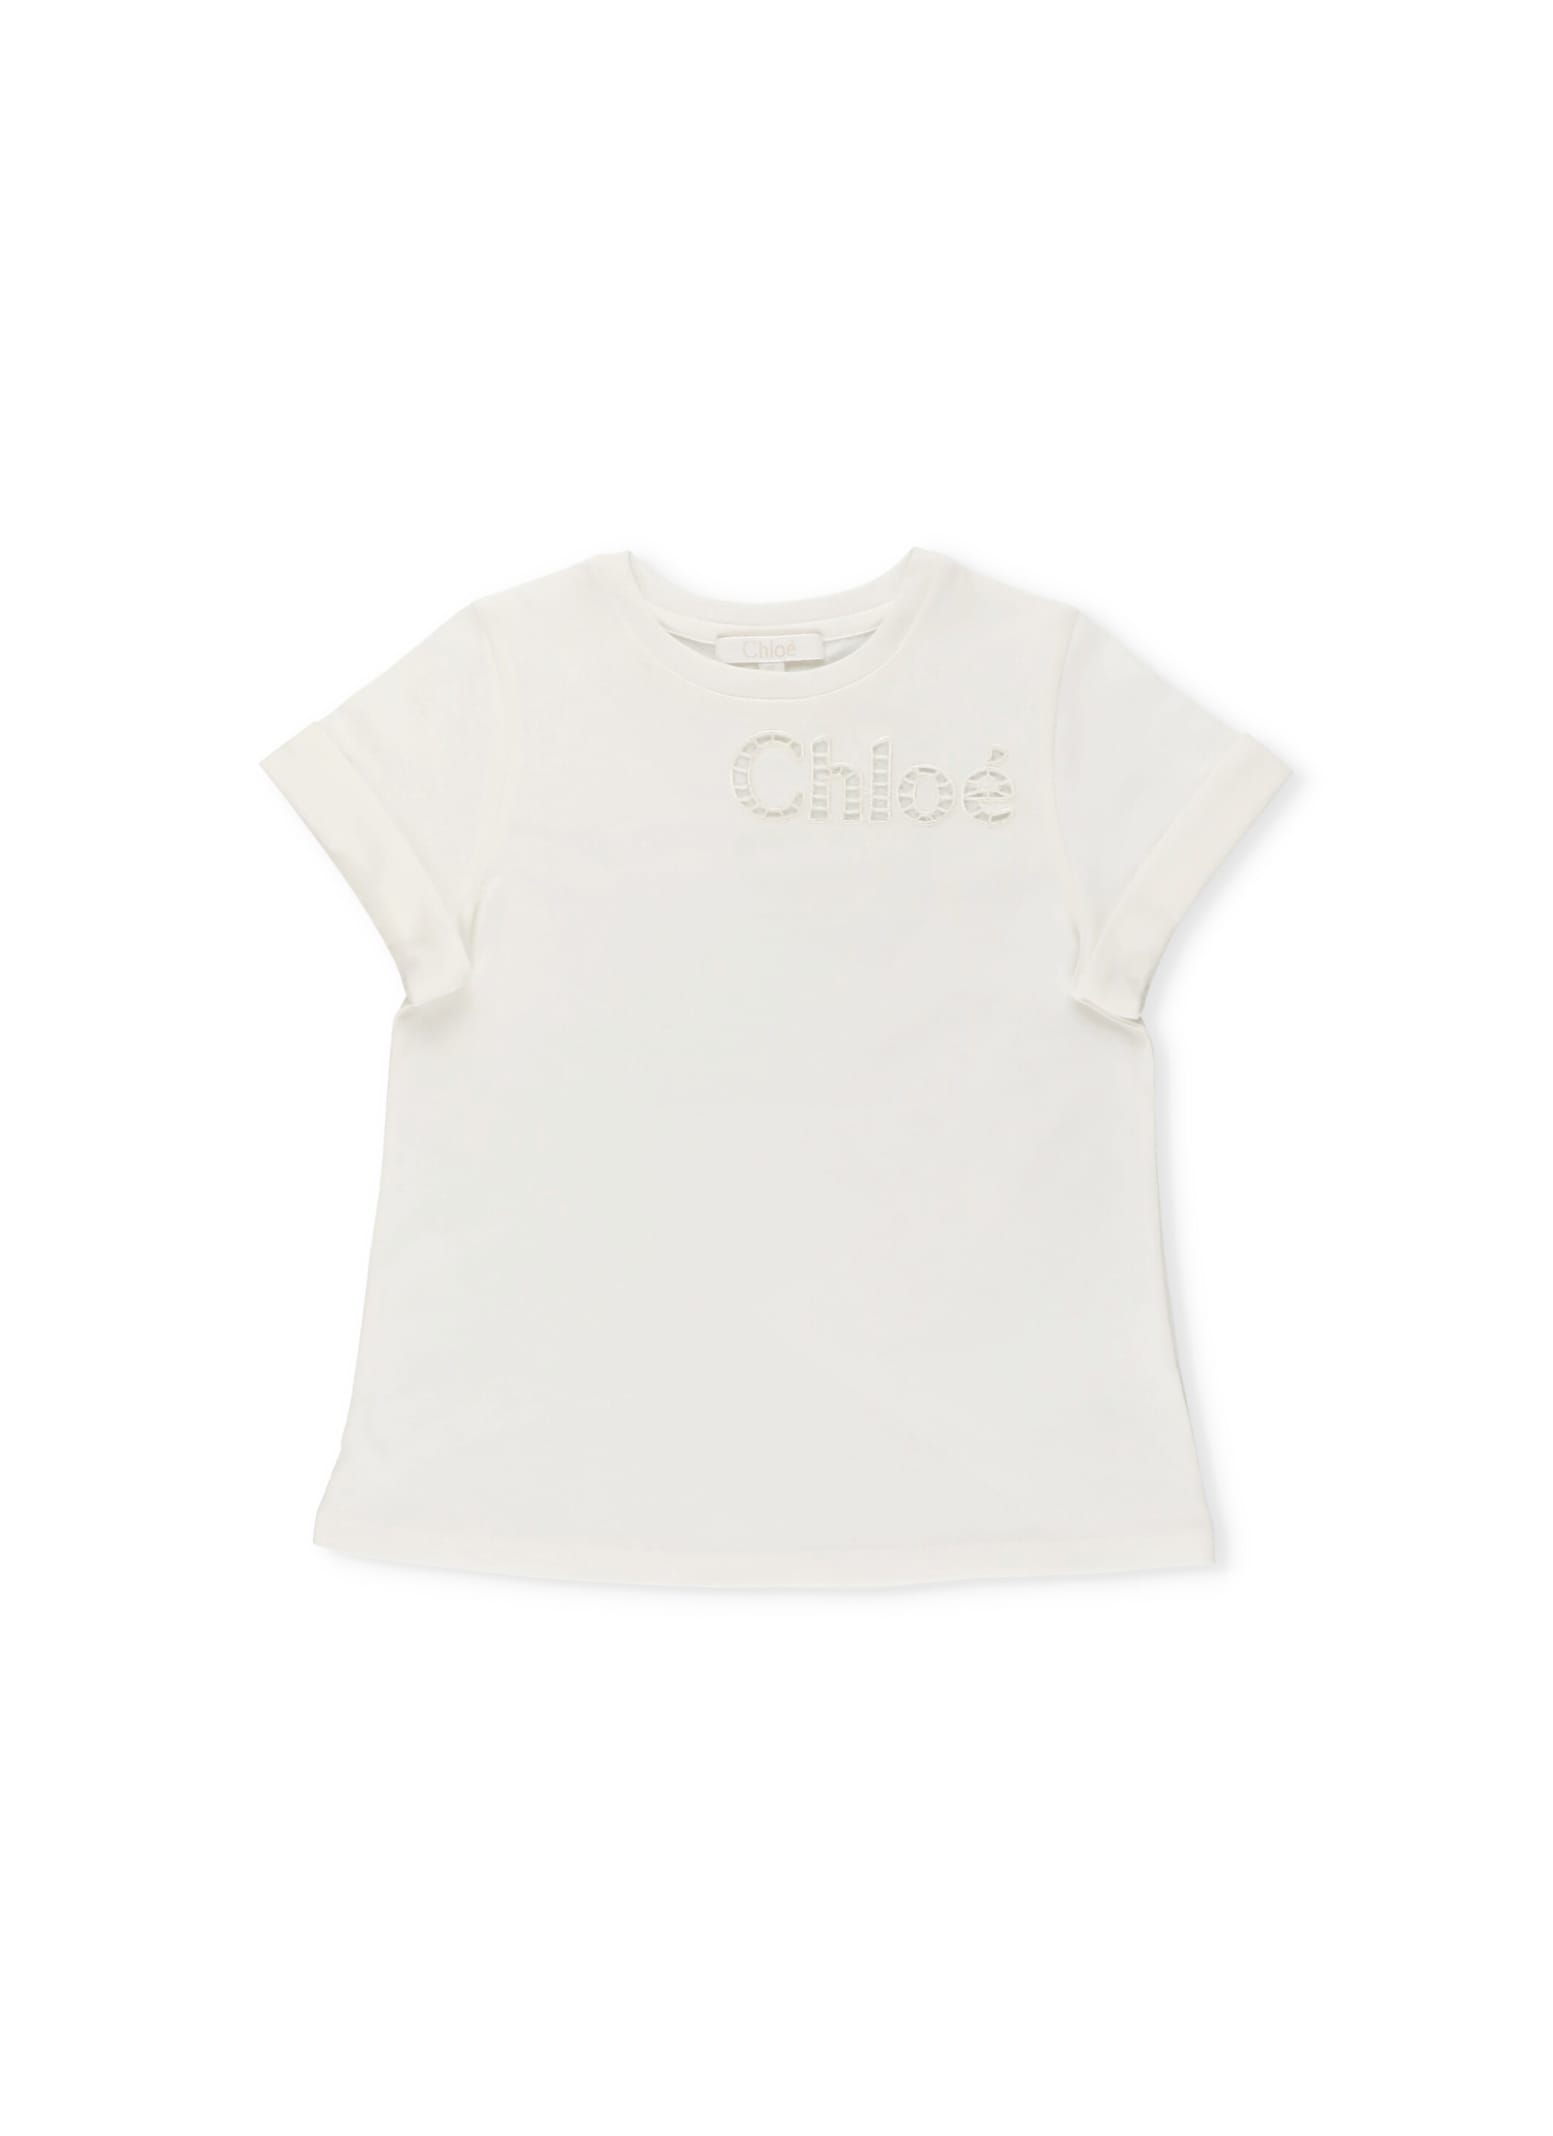 Chloé Open Work Logo T-shirt